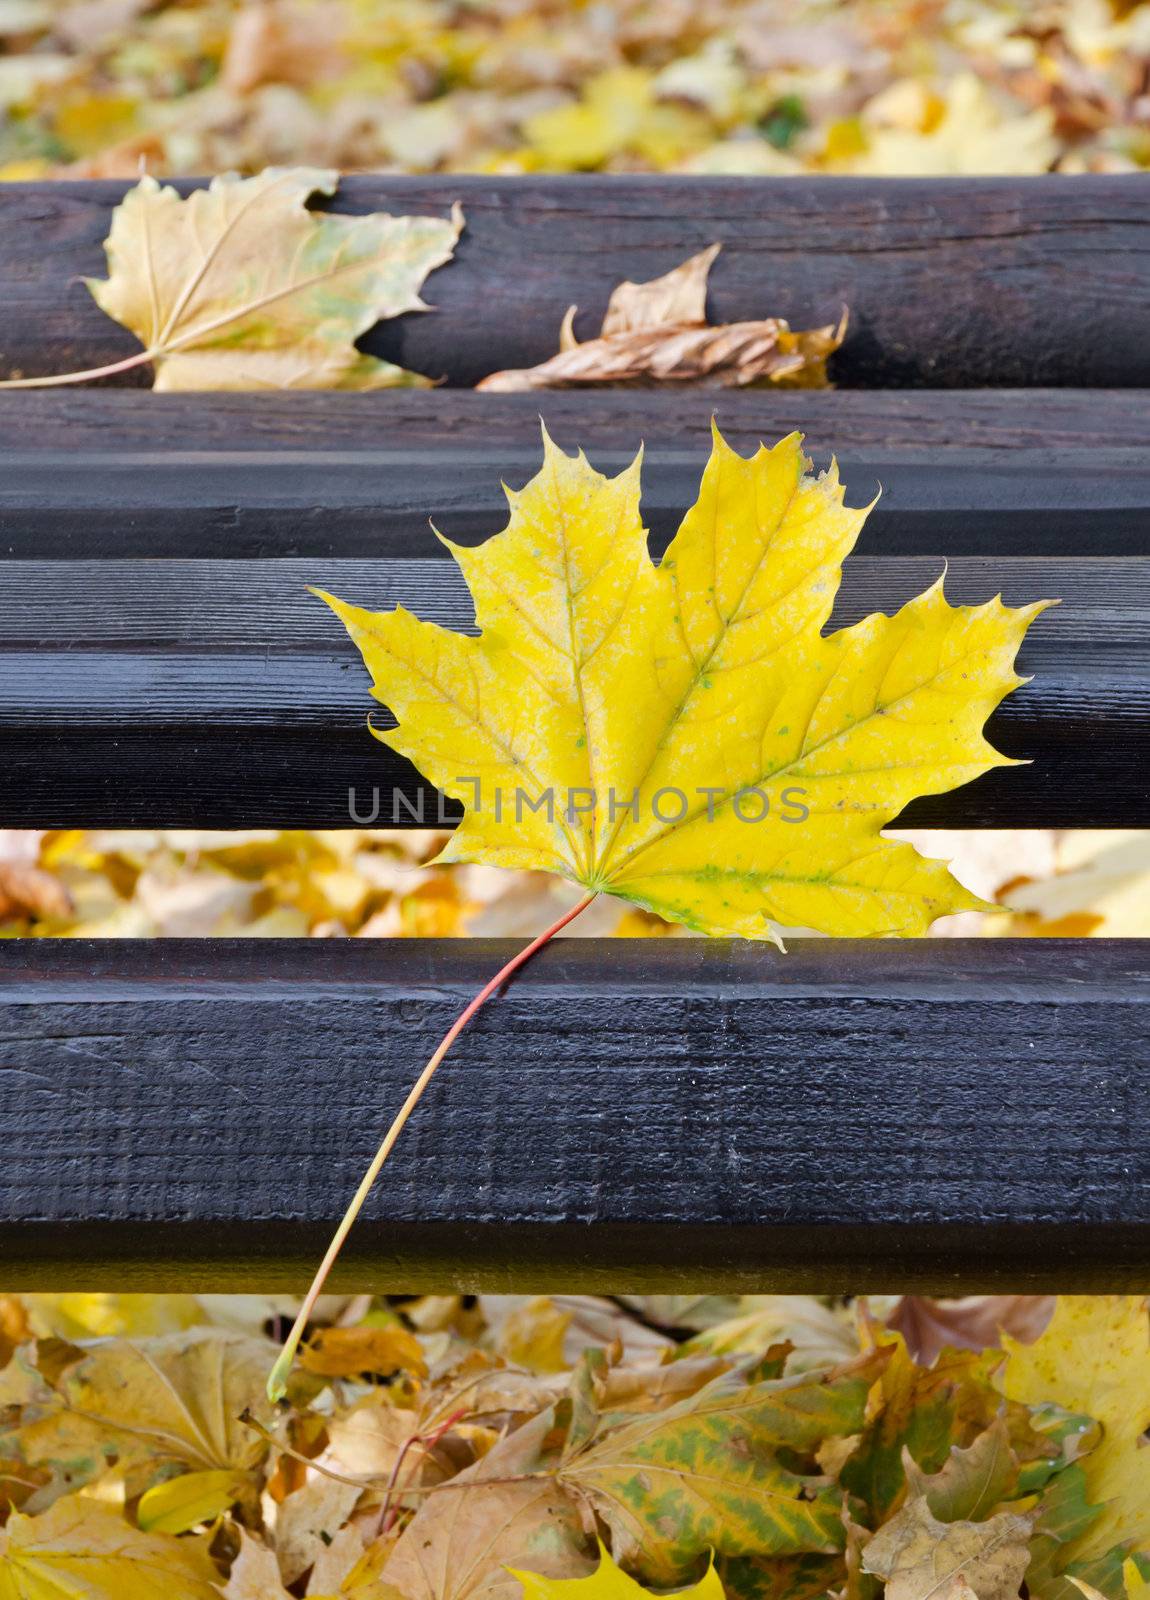 park bench in autumn by milinz